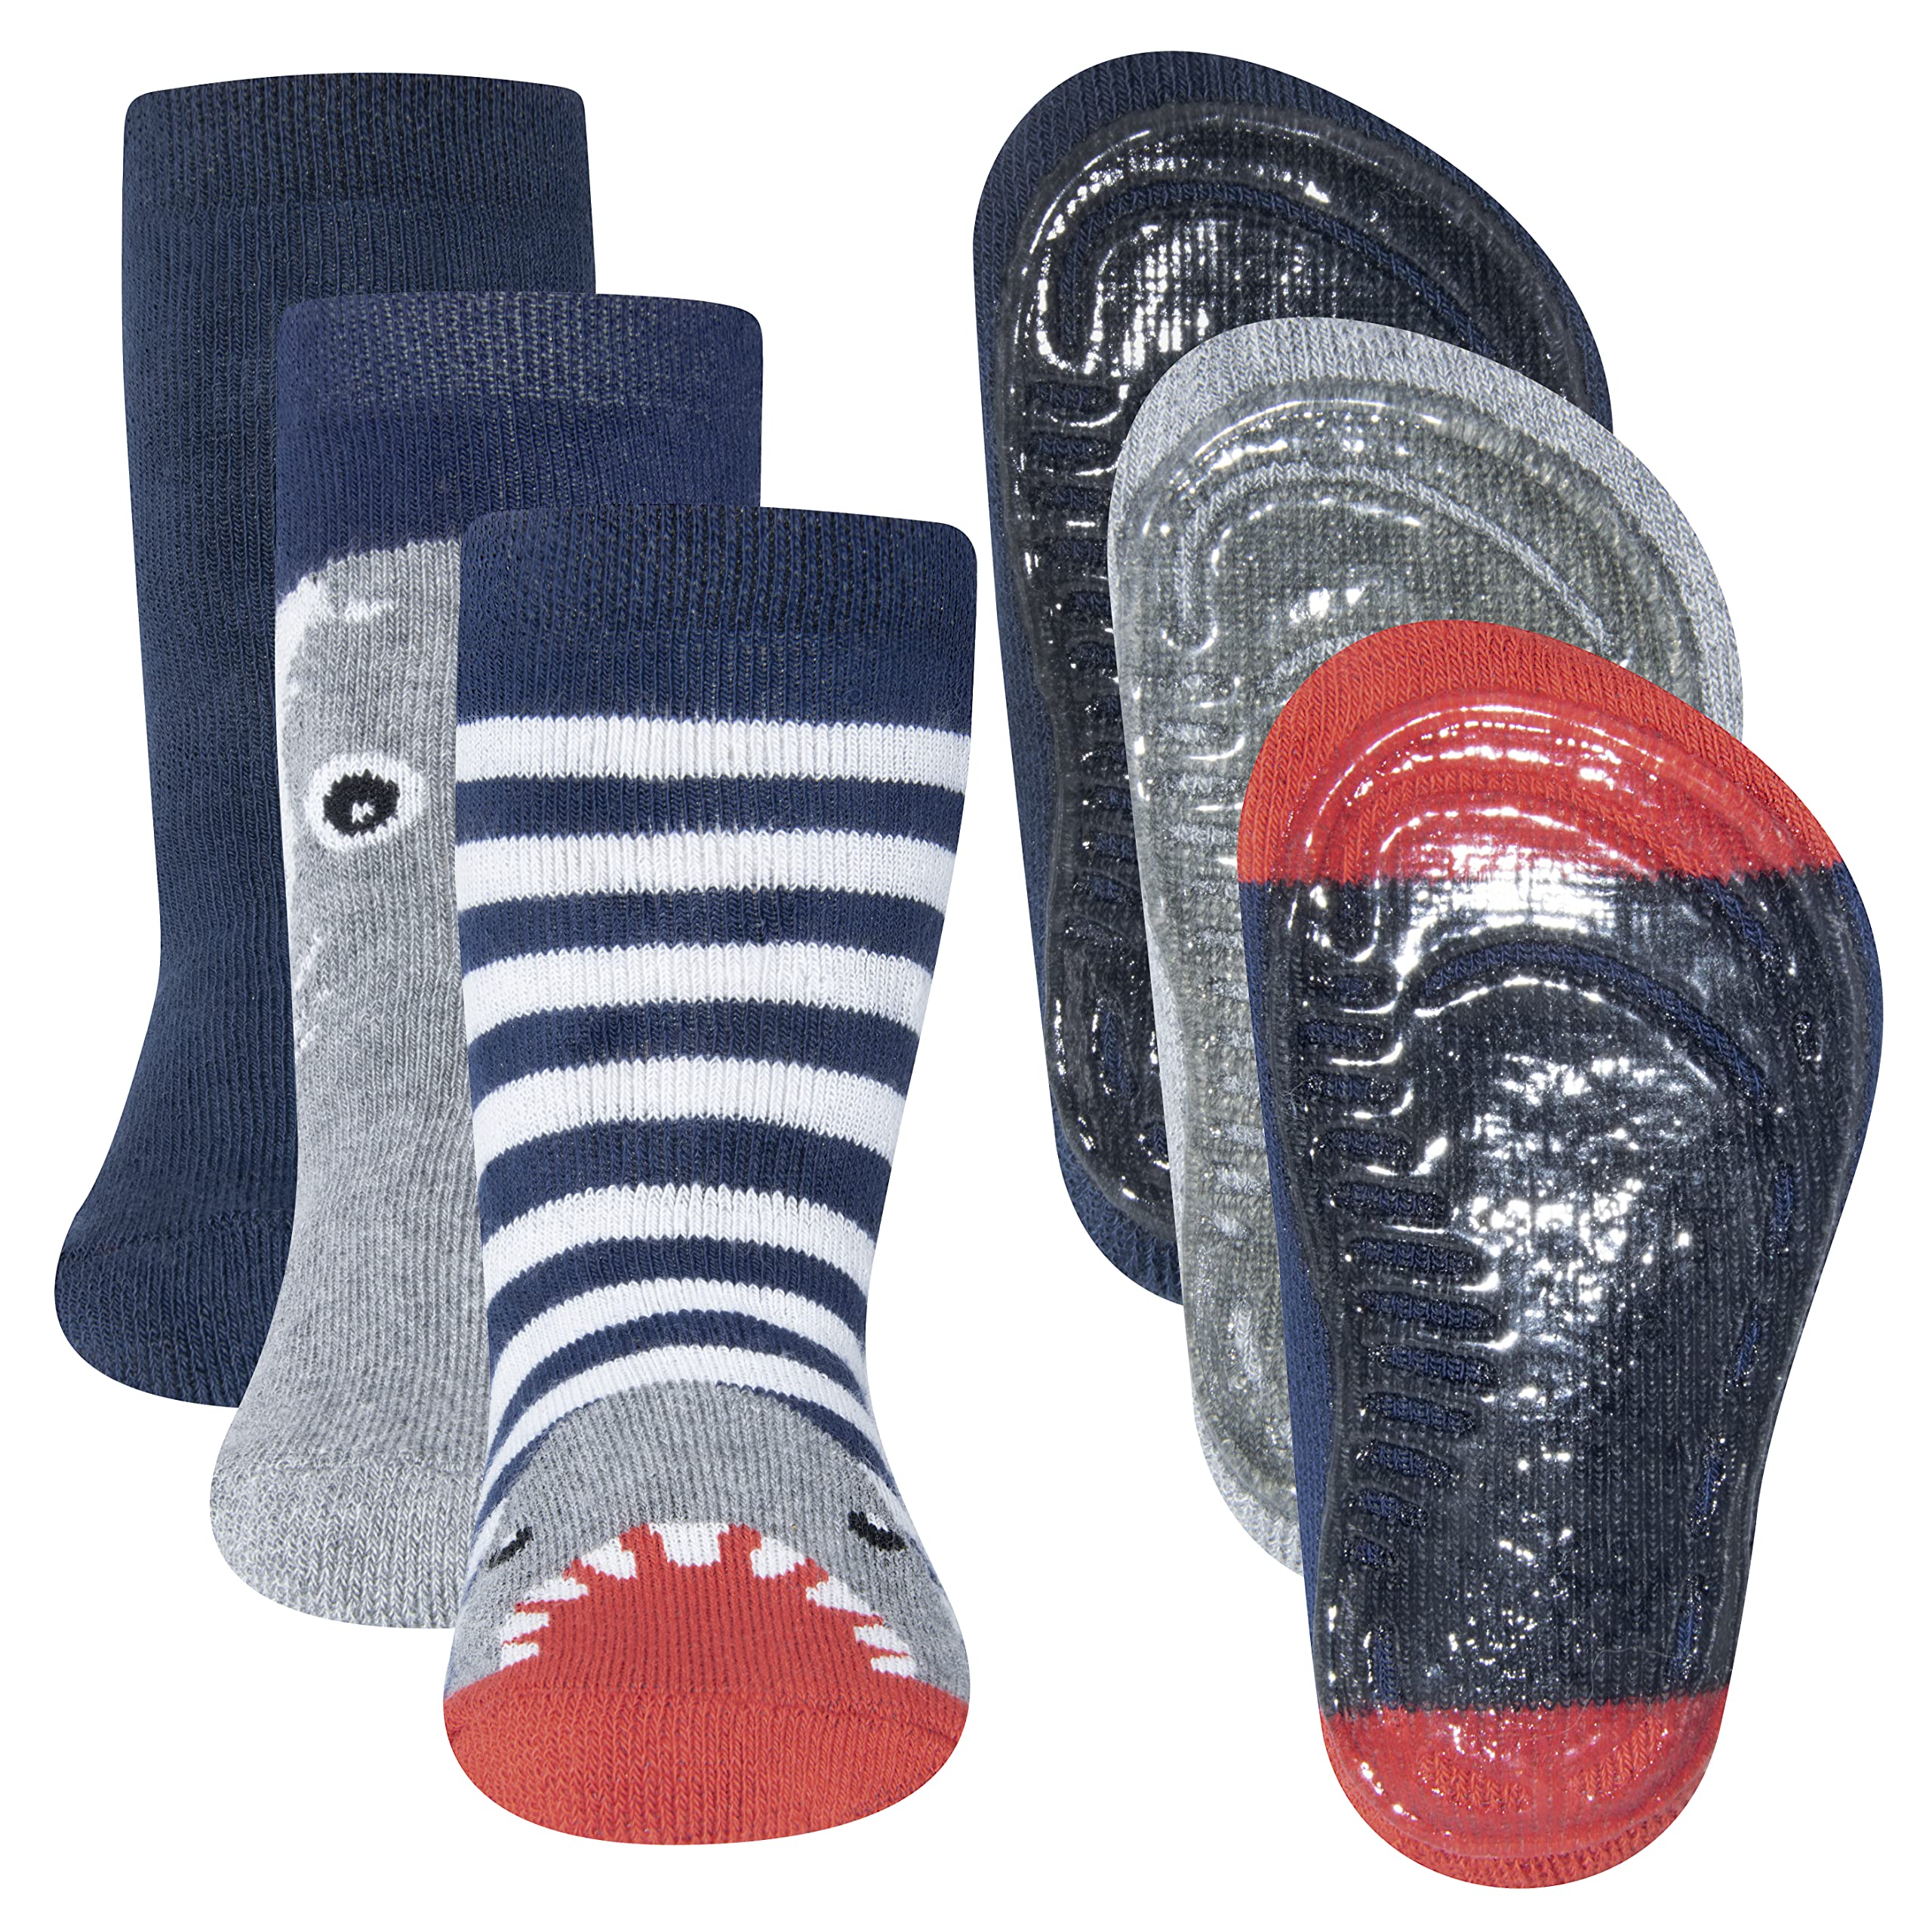 EWERS 3er-Pack Haifisch Stoppersocken SoftStep, Socken mit Antirutschsohle für Jungen, Anti-Rutsch-Socken mit Gummisohle, MADE IN GERMANY, 3 Paar rutschfeste Kindersocken für Jungs, Größe 23-24